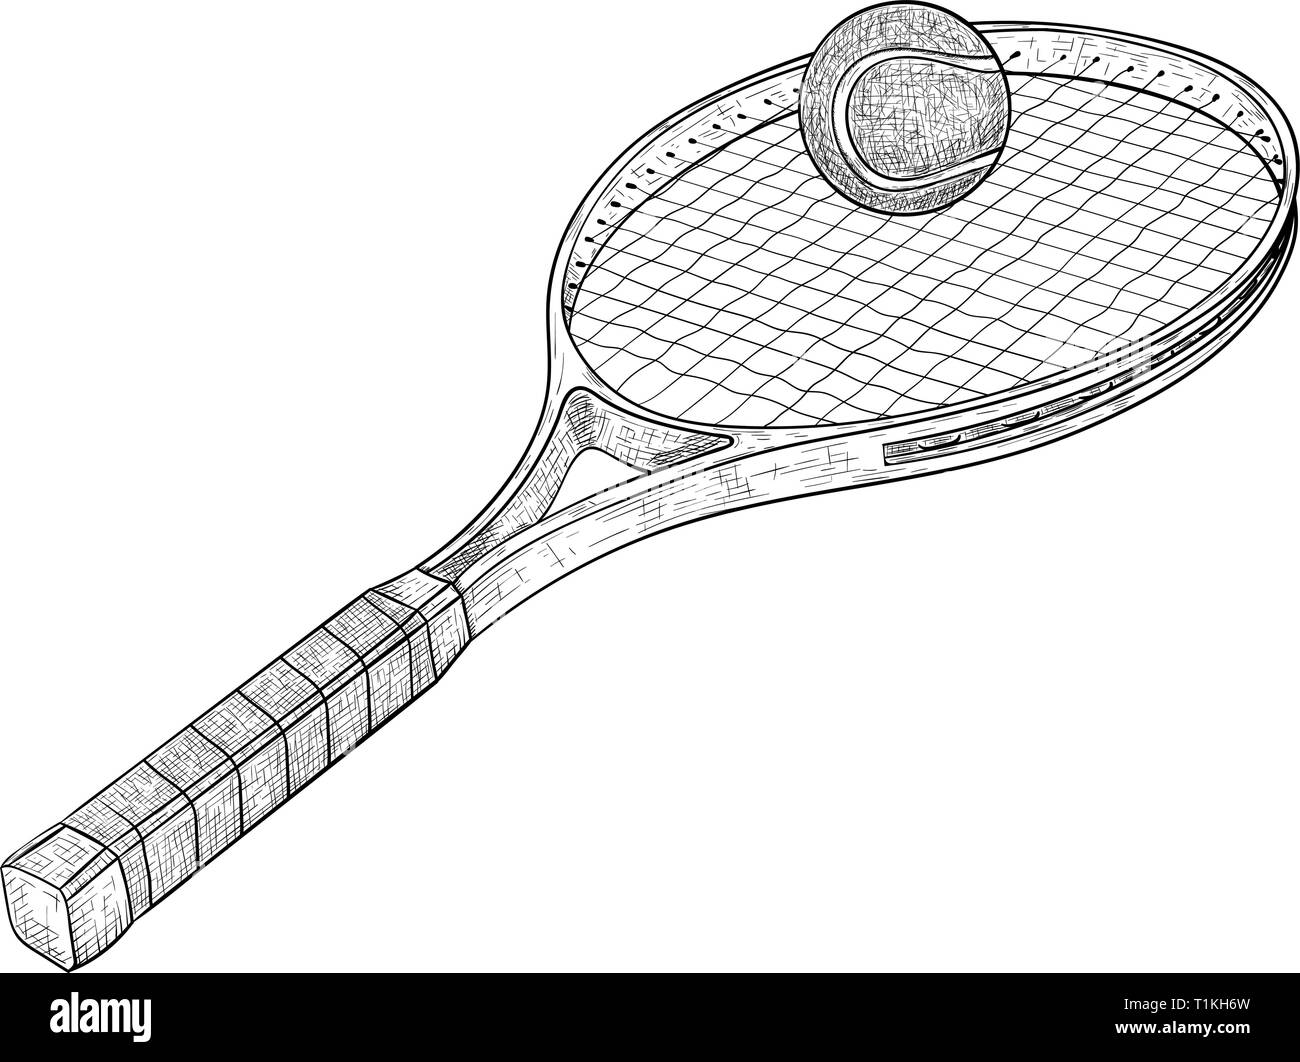 Tennis sketch Stock-Vektorgrafiken kaufen - Alamy